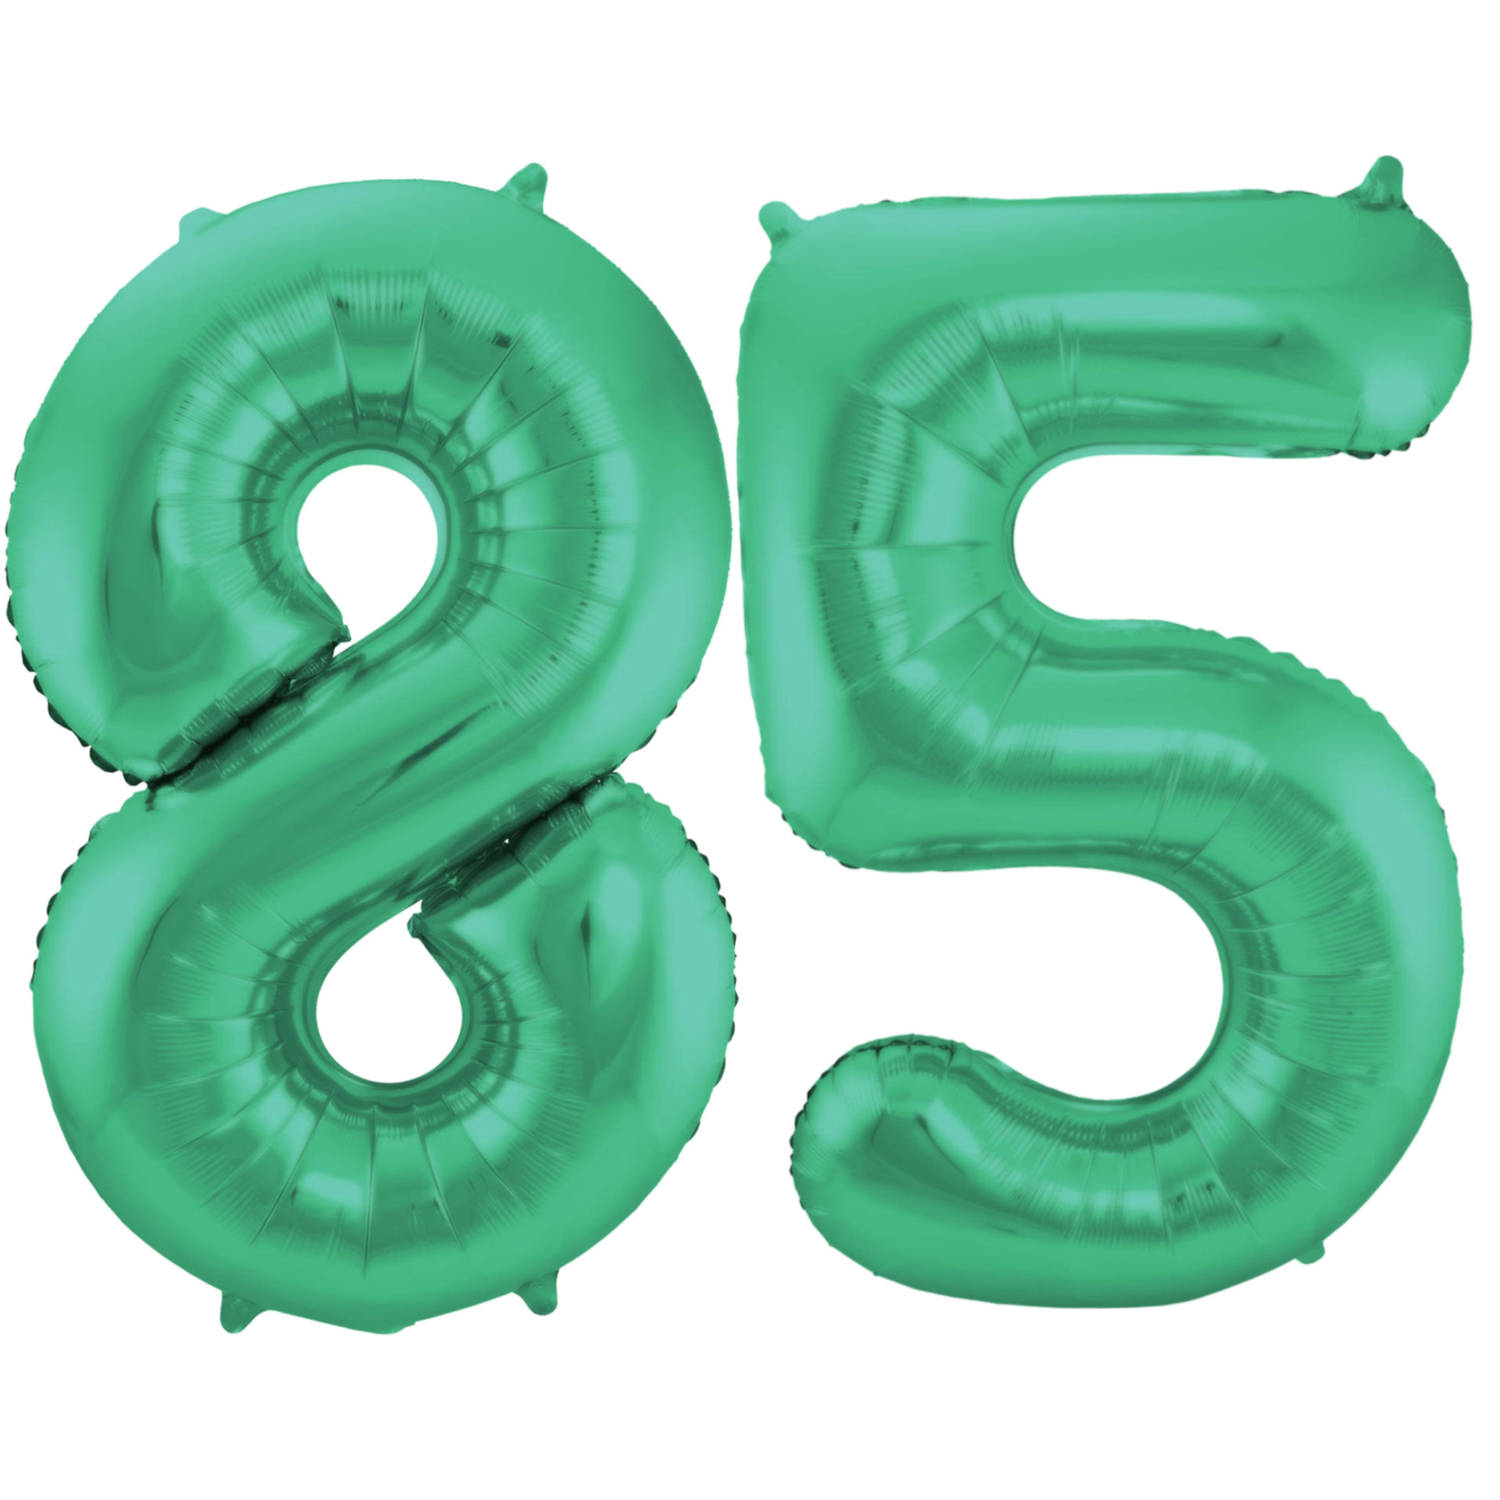 Leeftijd feestartikelen/versiering grote folie ballonnen 85 jaar glimmend groen 86 cm - Ballonnen